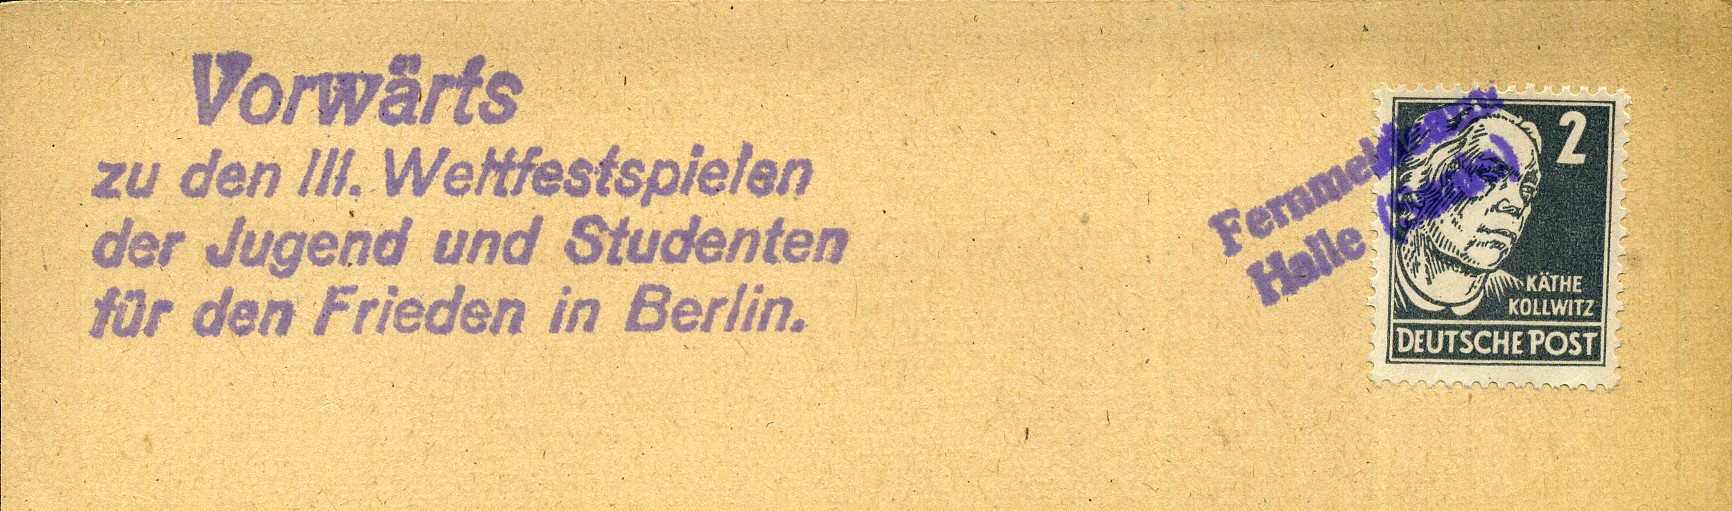 Vorwärts zu den III. Weltfestspielen der Jugend und Studenten für den Frieden in Berlin. - Handstempel - violett - Fernmeldeamt Halle (Saale)